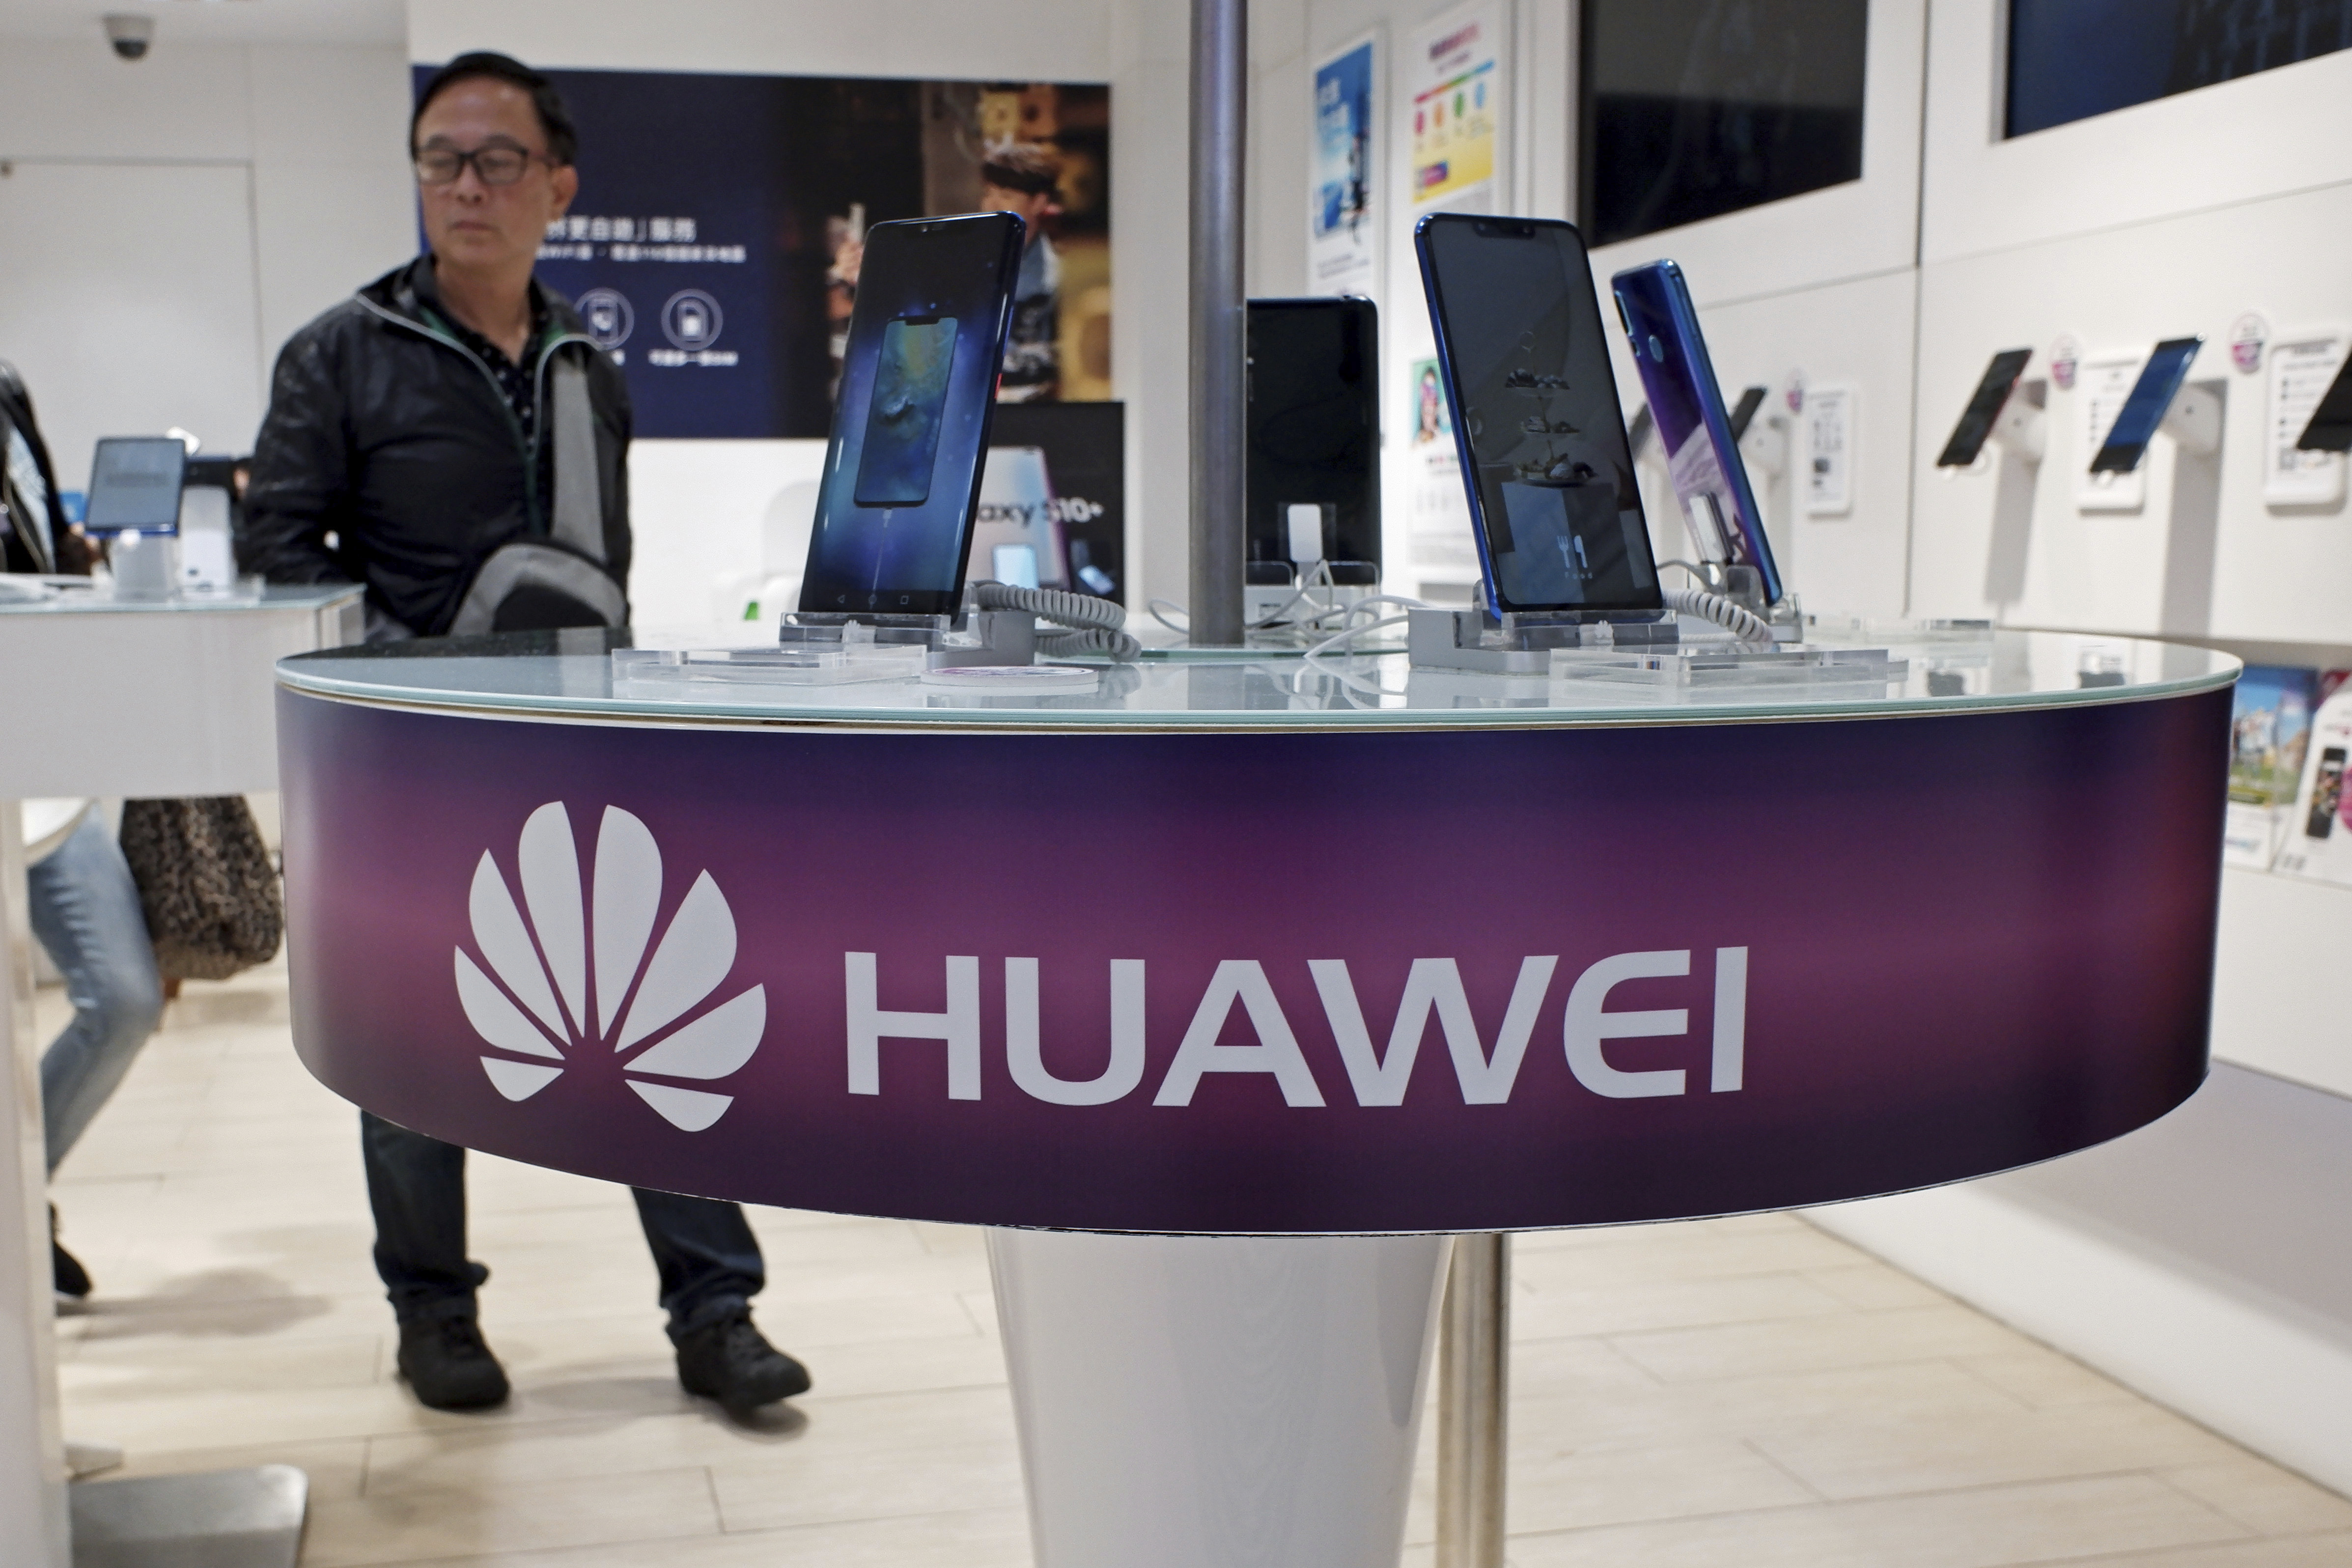 lidar radar jammer plane , China’s Huawei Says 1Q Sales Up 39%